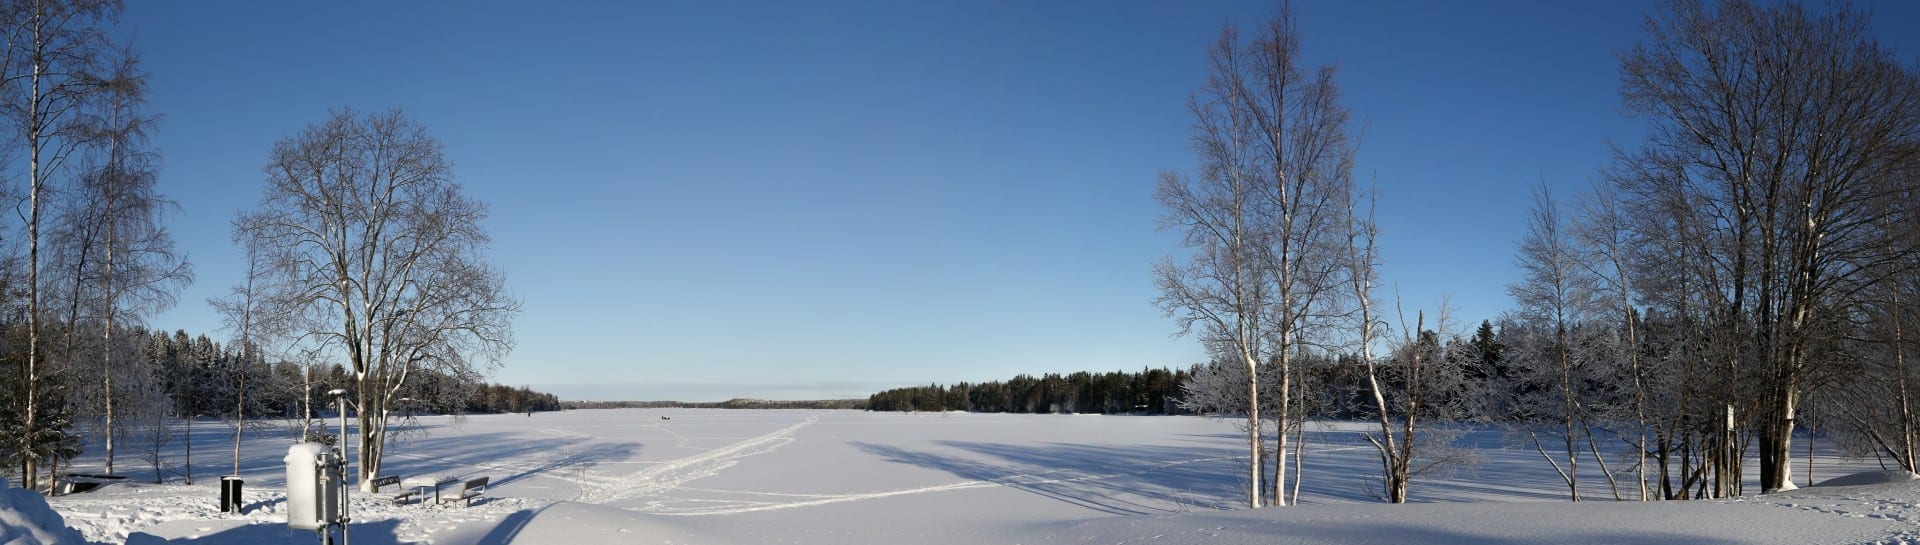 Vista de Nydalasjön desde el extremo sur en febrero de 2013. Umea Suecia